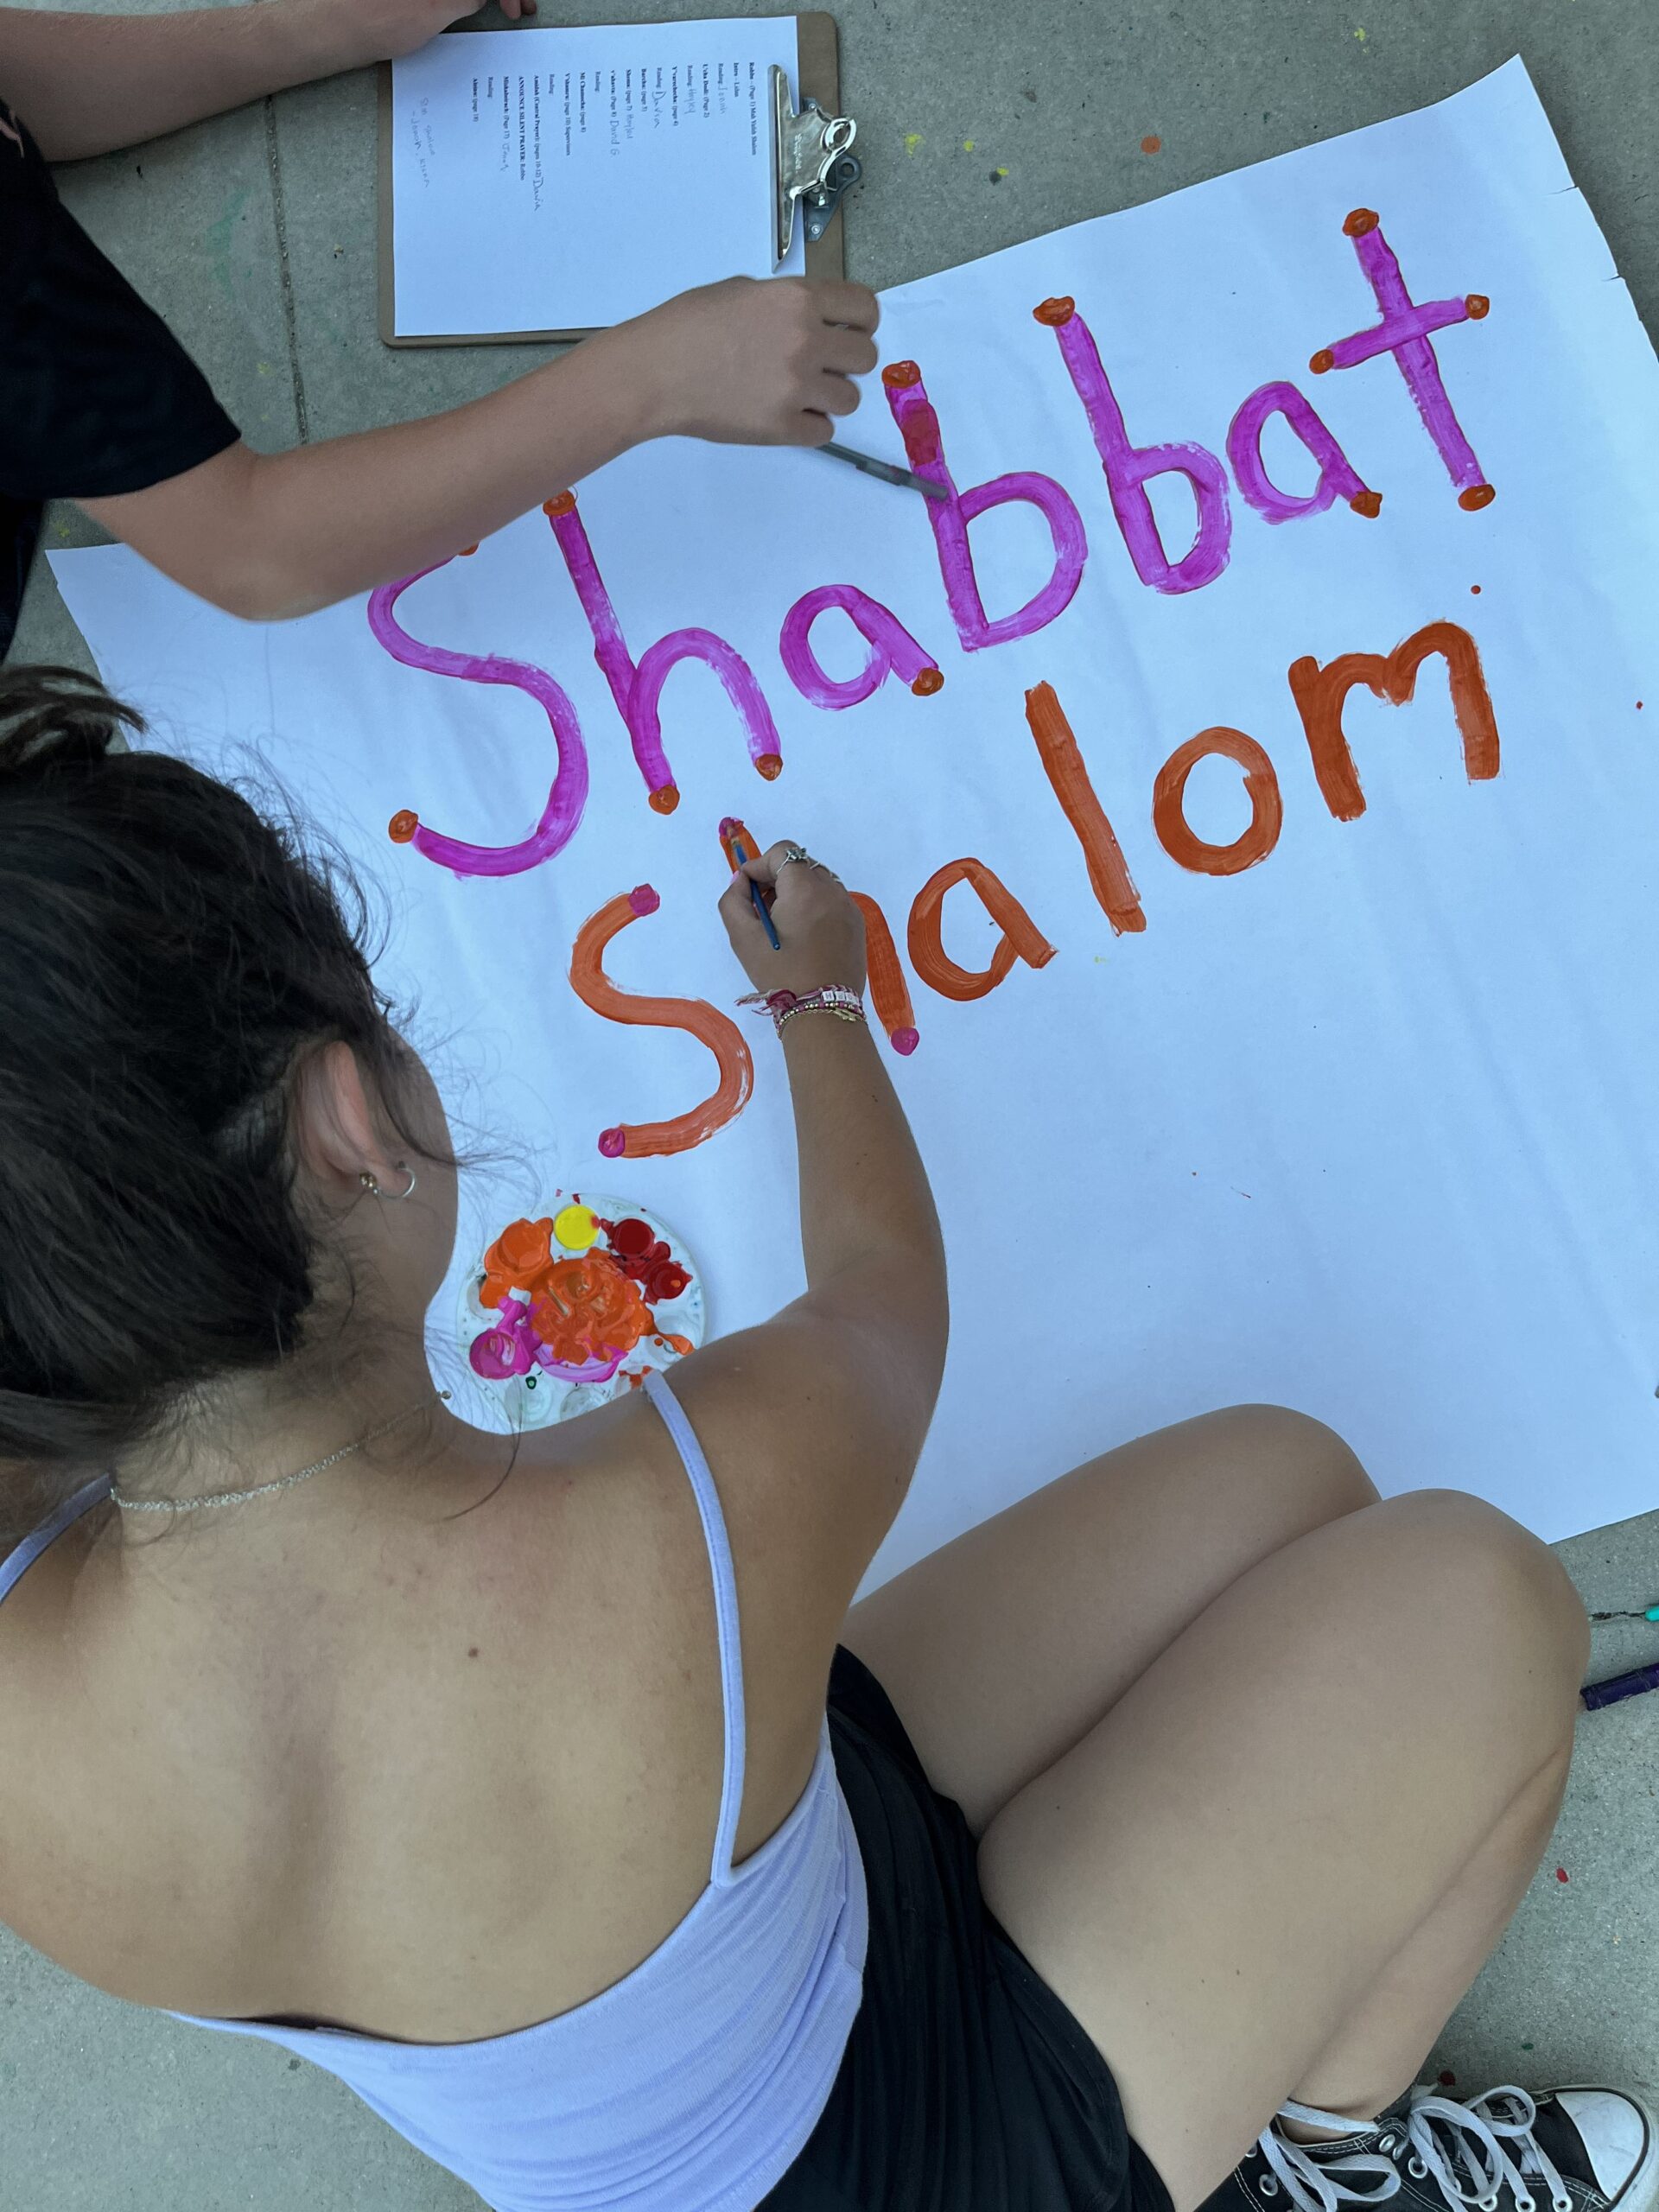 Shabbat Shalom sign.